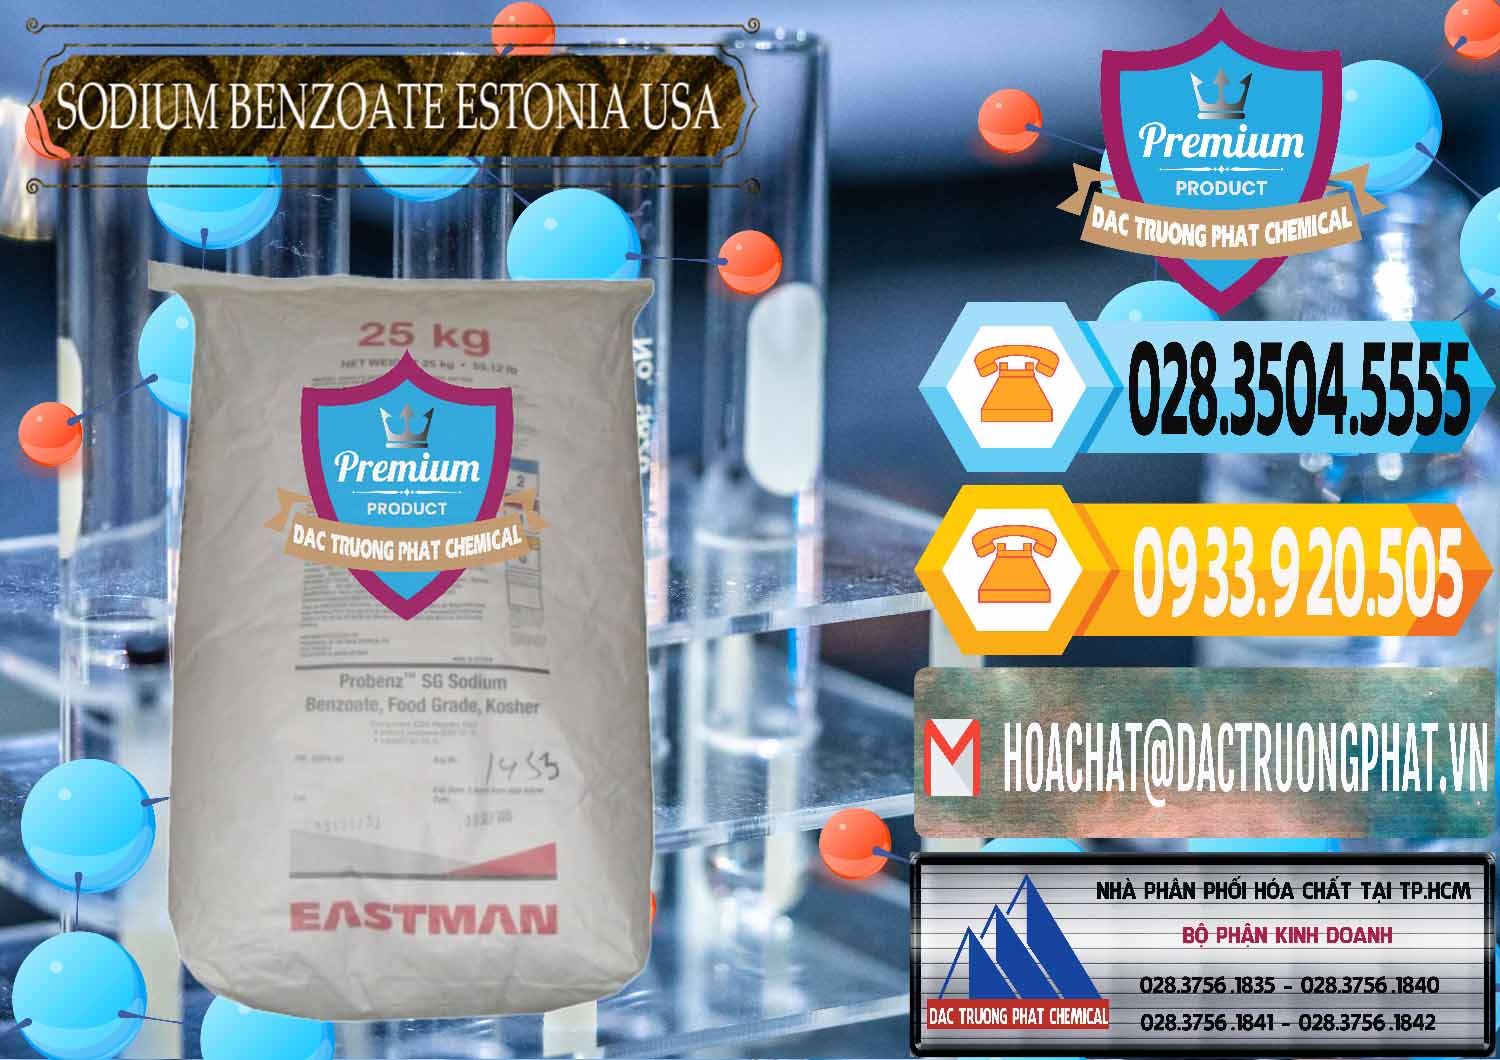 Nhà nhập khẩu và bán Sodium Benzoate - Mốc Bột Estonia Mỹ USA - 0468 - Đơn vị nhập khẩu ( phân phối ) hóa chất tại TP.HCM - hoachattayrua.net